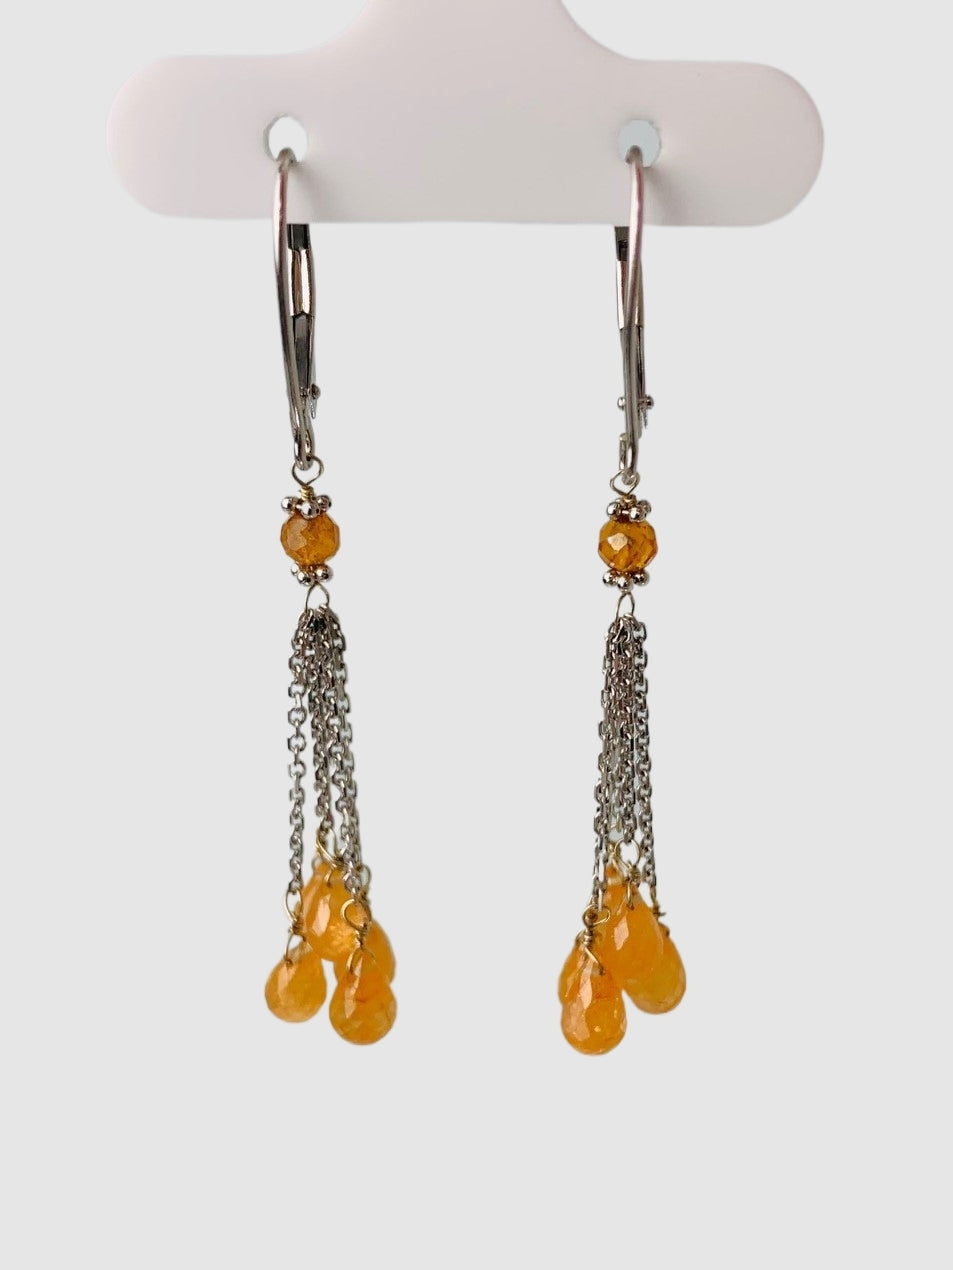 Spessertite Garnet Tassel Earrings in 14KW - EAR-190-TASGM14W-OG